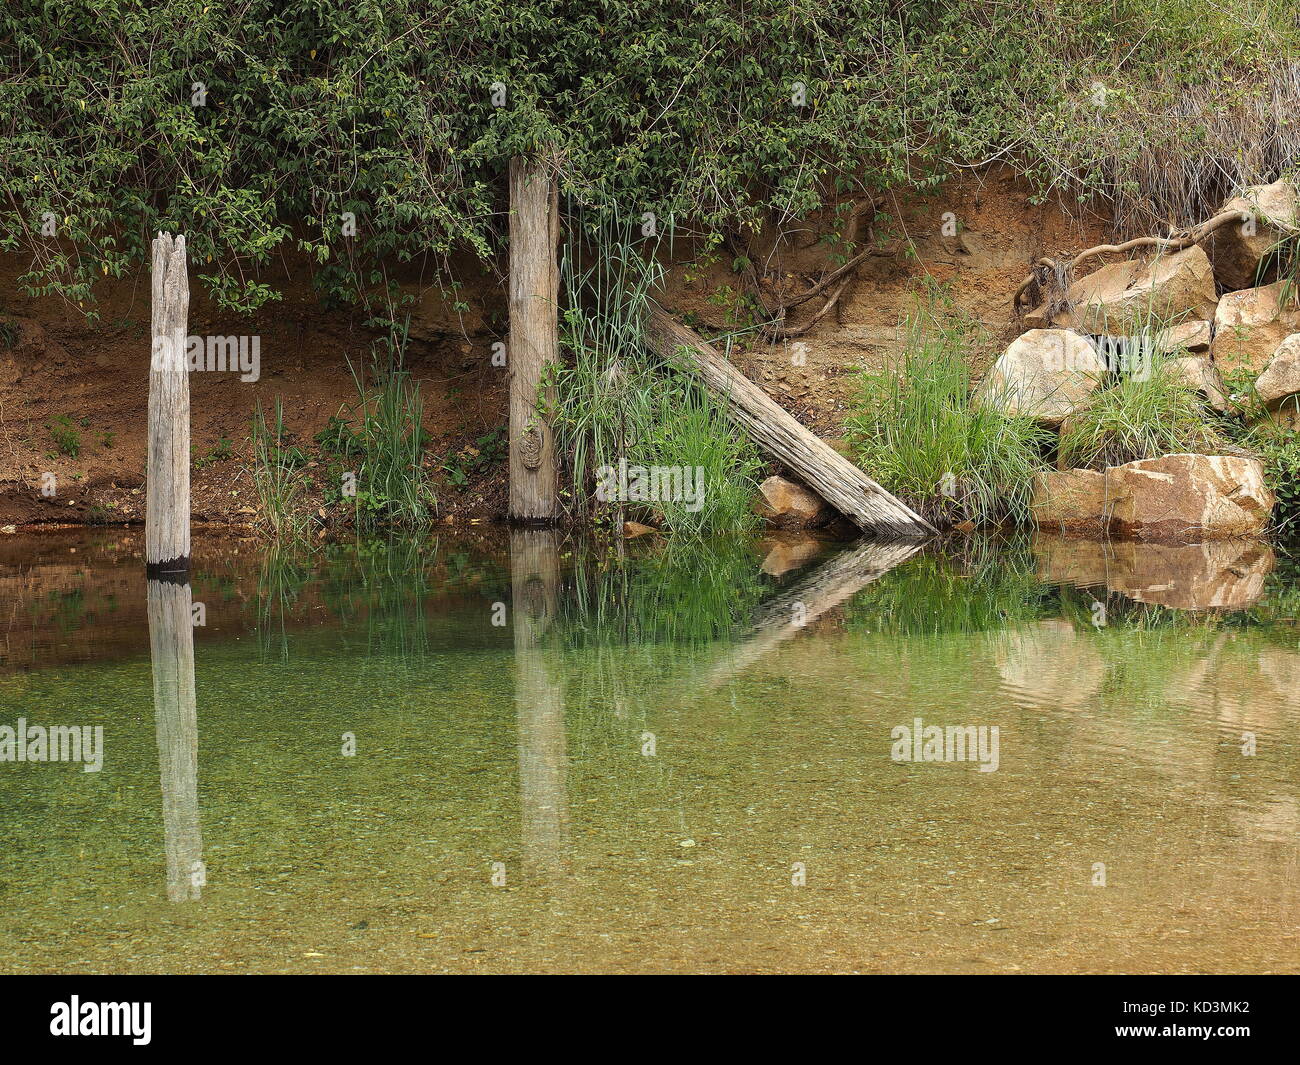 Ein ruhiger Bach/Teich mit Logs, Pflanzen und Felsen auf der ruhigen Oberfläche des Wassers im Land Australien widerspiegelt. Klares, frisches Wasser Strom. Stockfoto